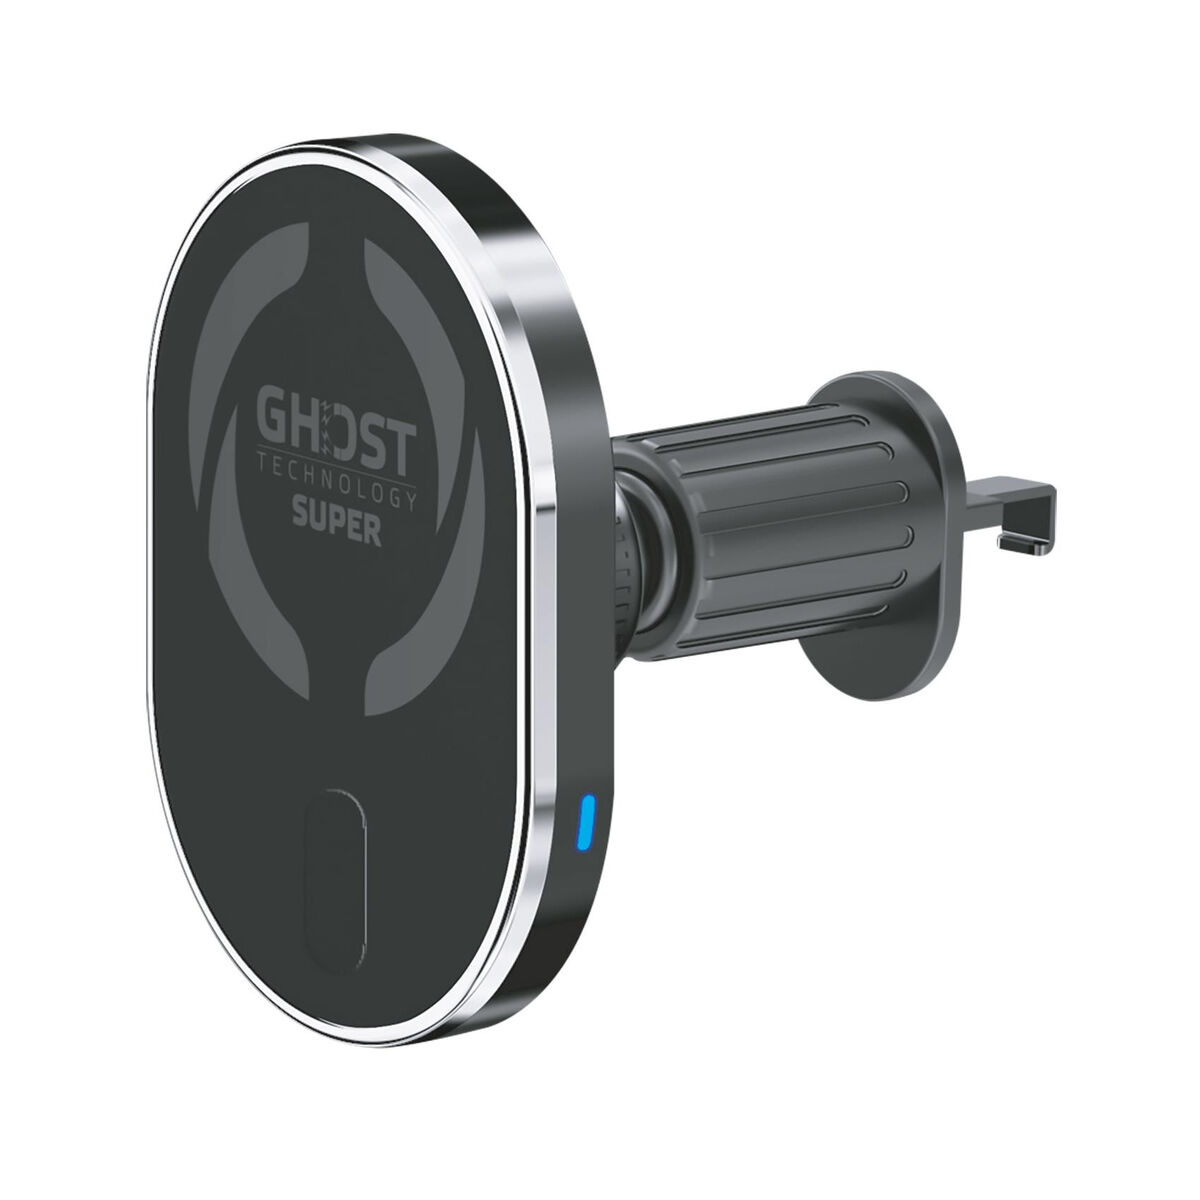 Support pour téléphone portable avec chargeur de voiture sans fil Celly GhostSuperMagCH 15 W Noir